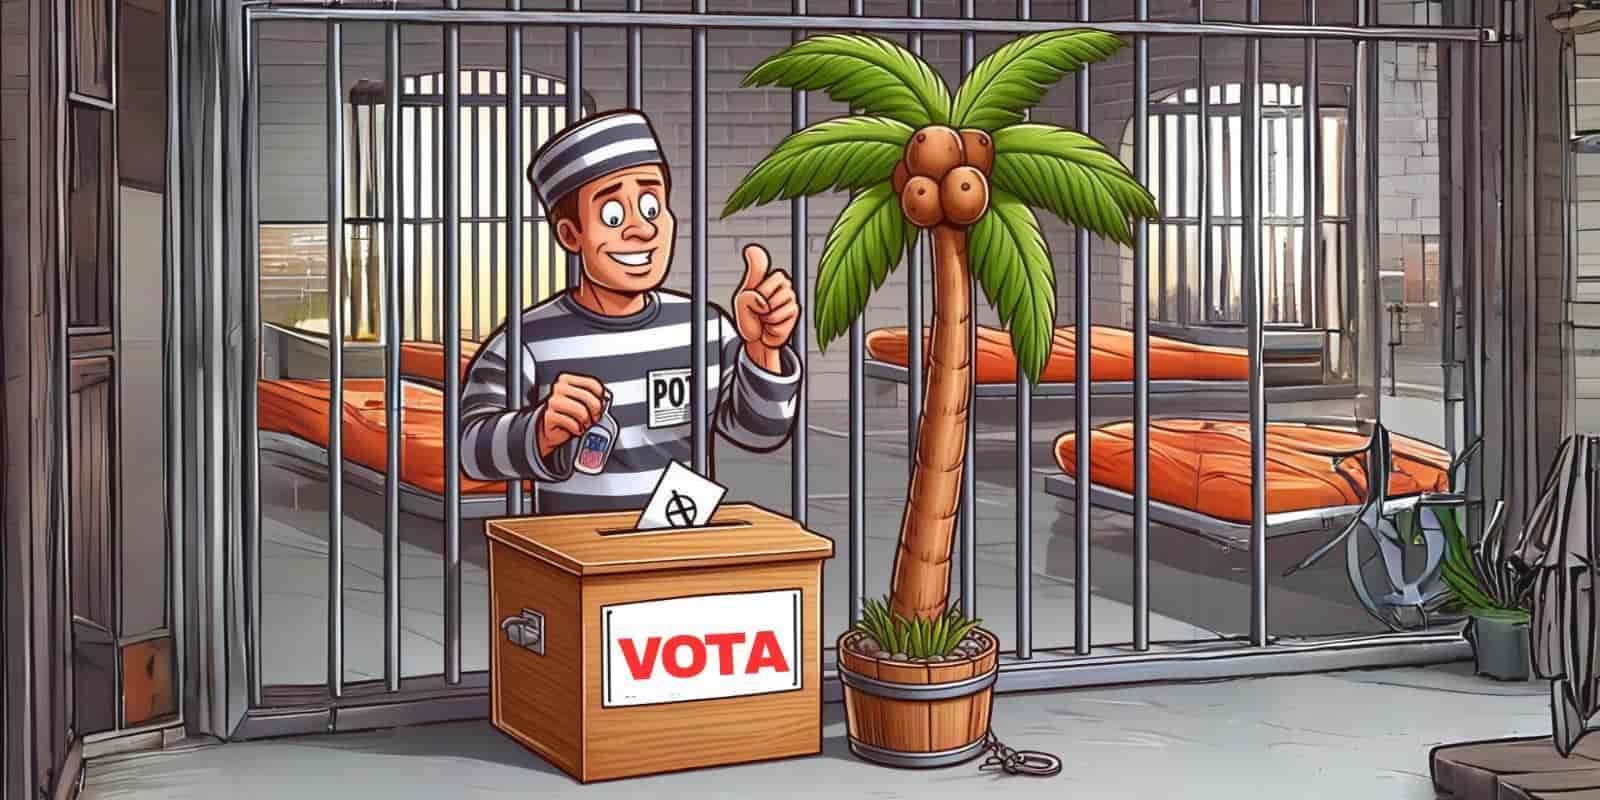 "El Cui, no quiere dejar votar a presos sin sentencia